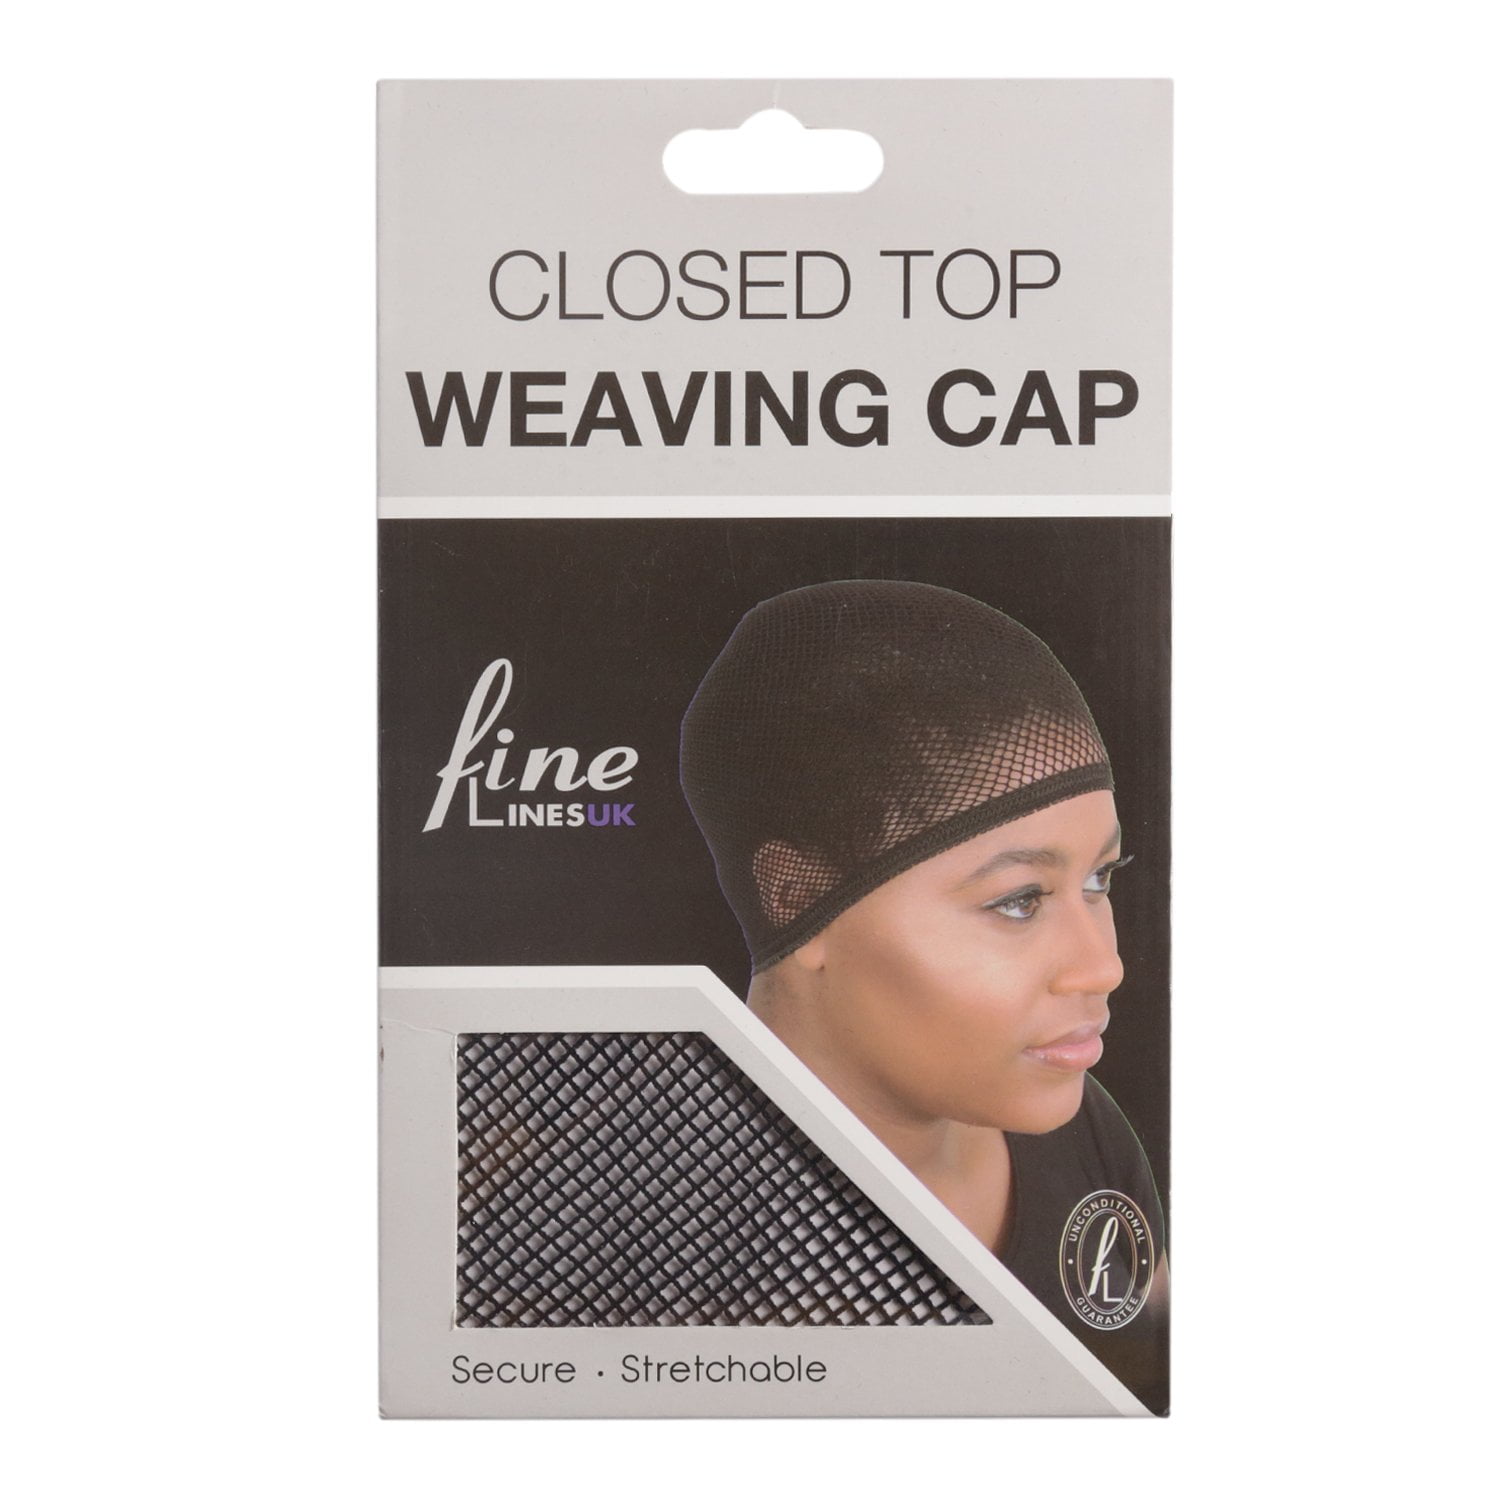 weaving cap ajustable 6363 01